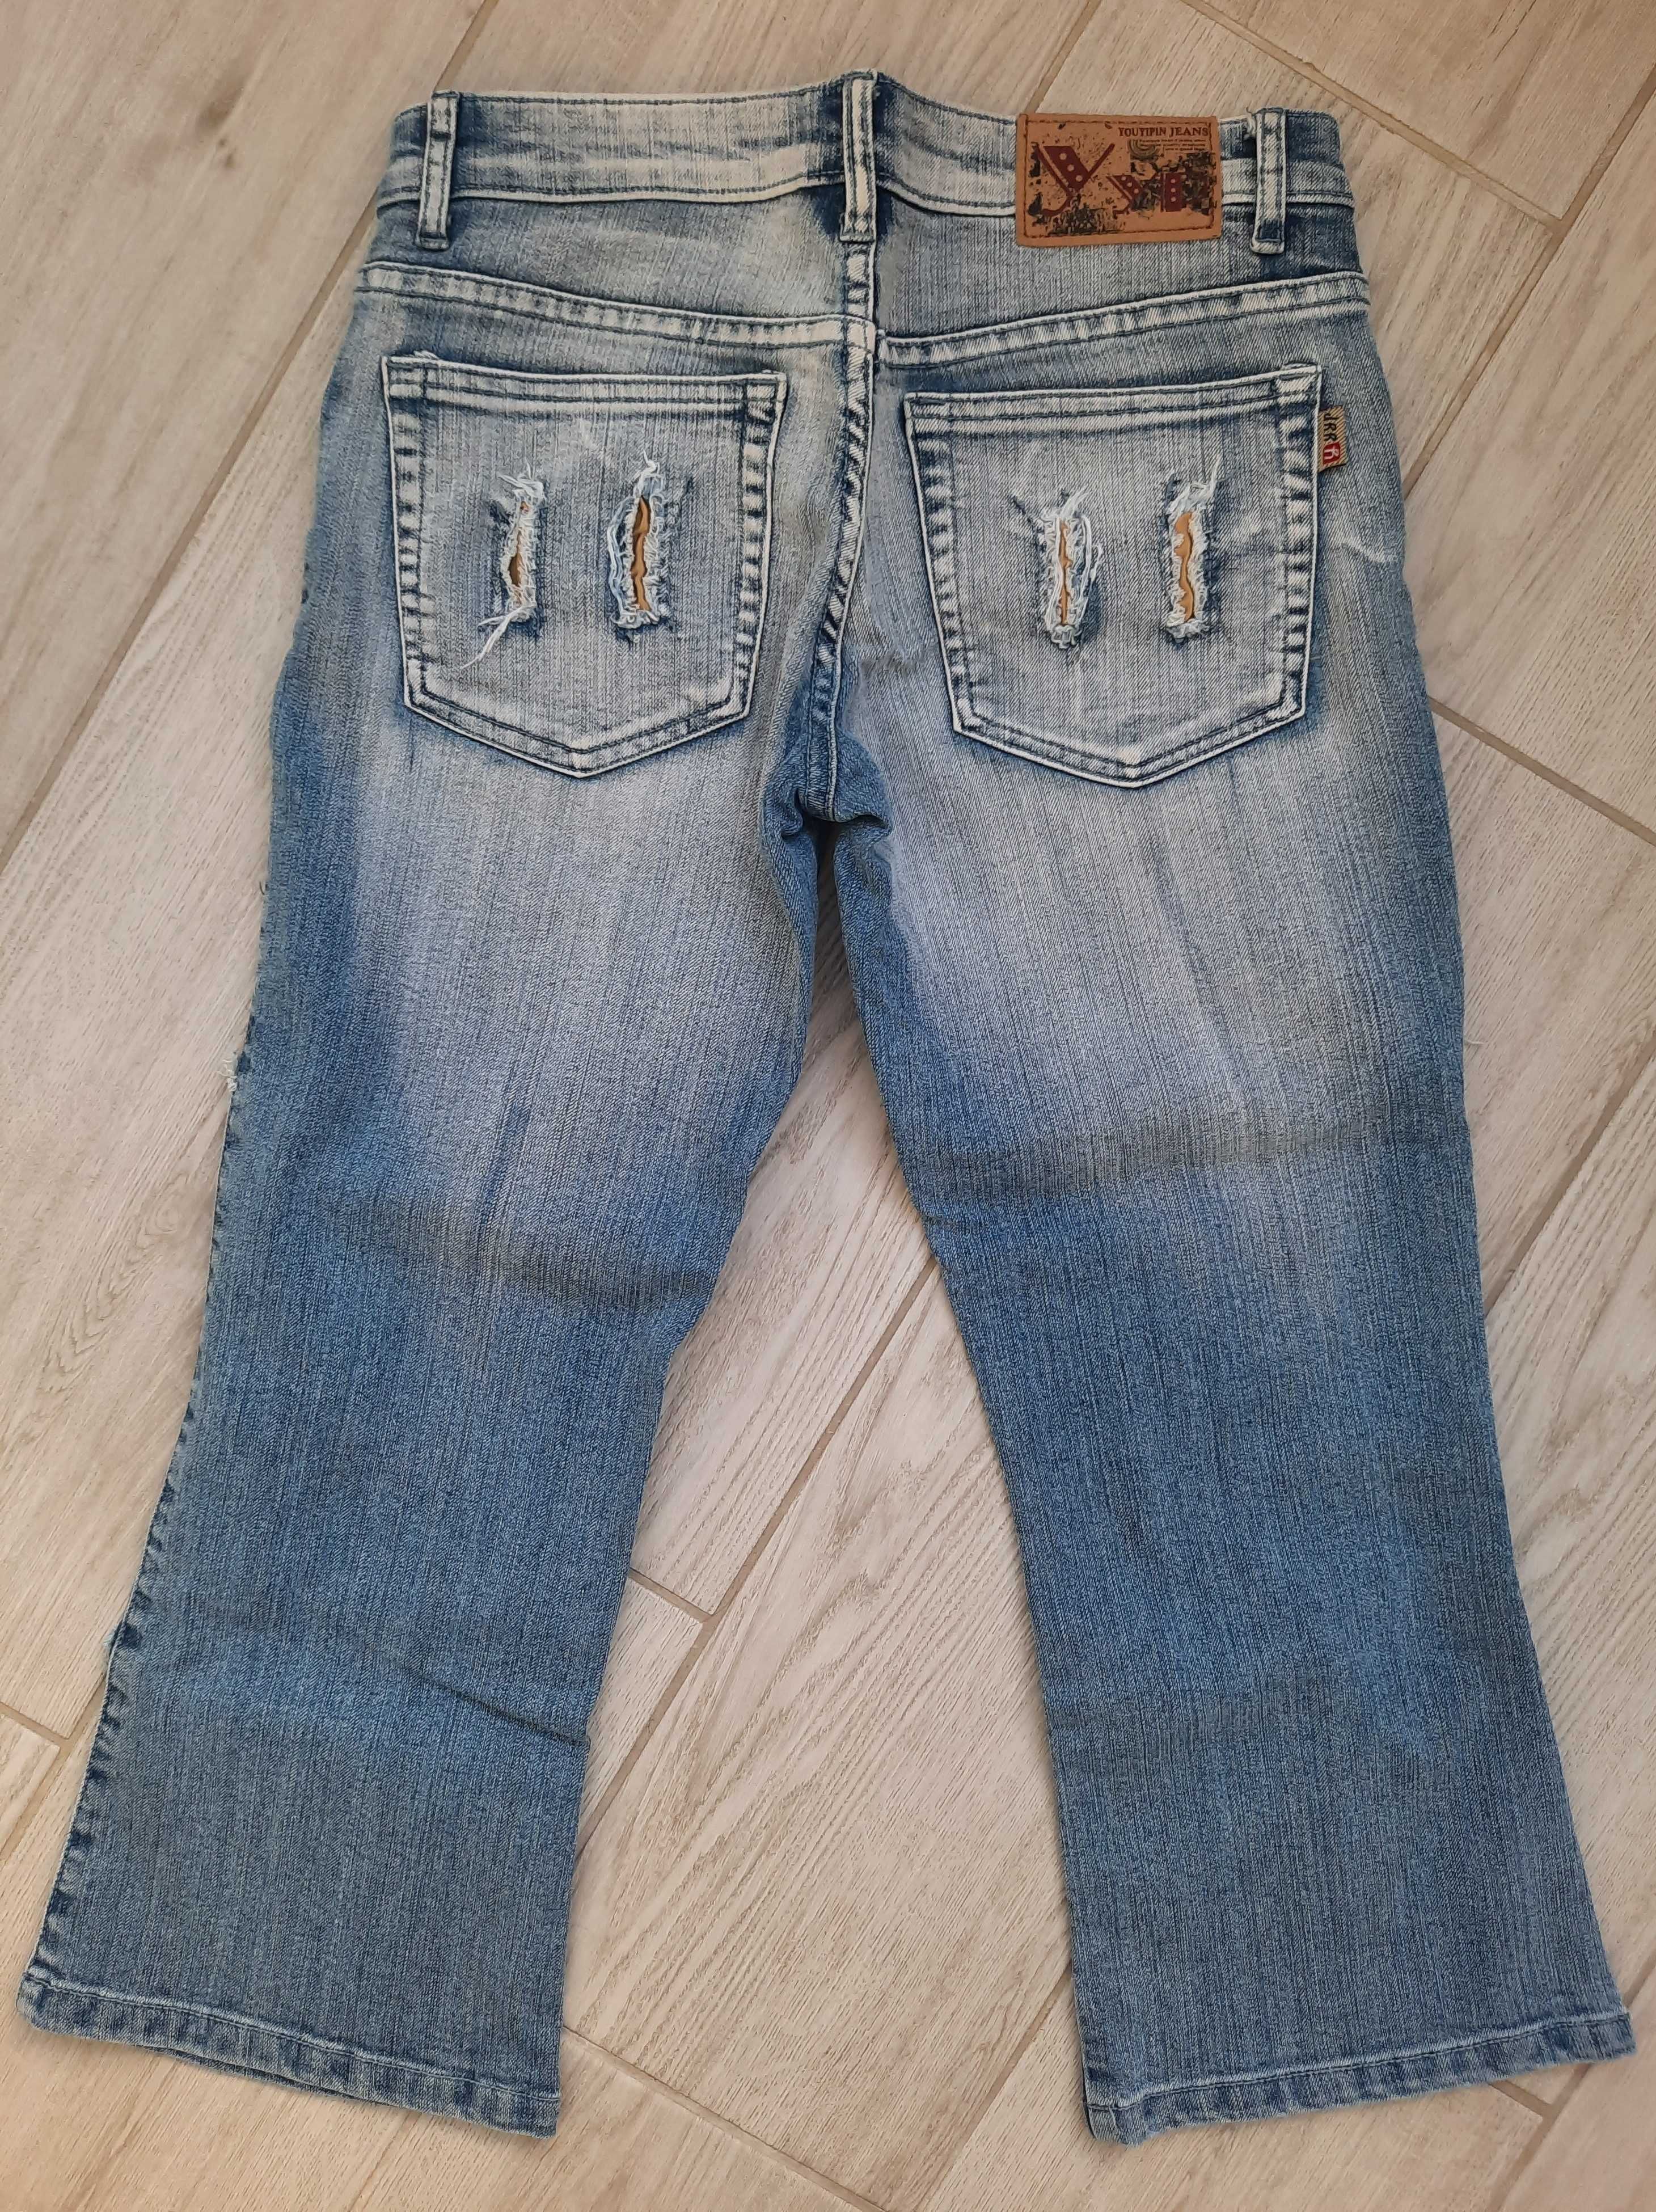 Новые капри/бриджи джинсовые на девочку подростка, р. 27 (есть замеры)